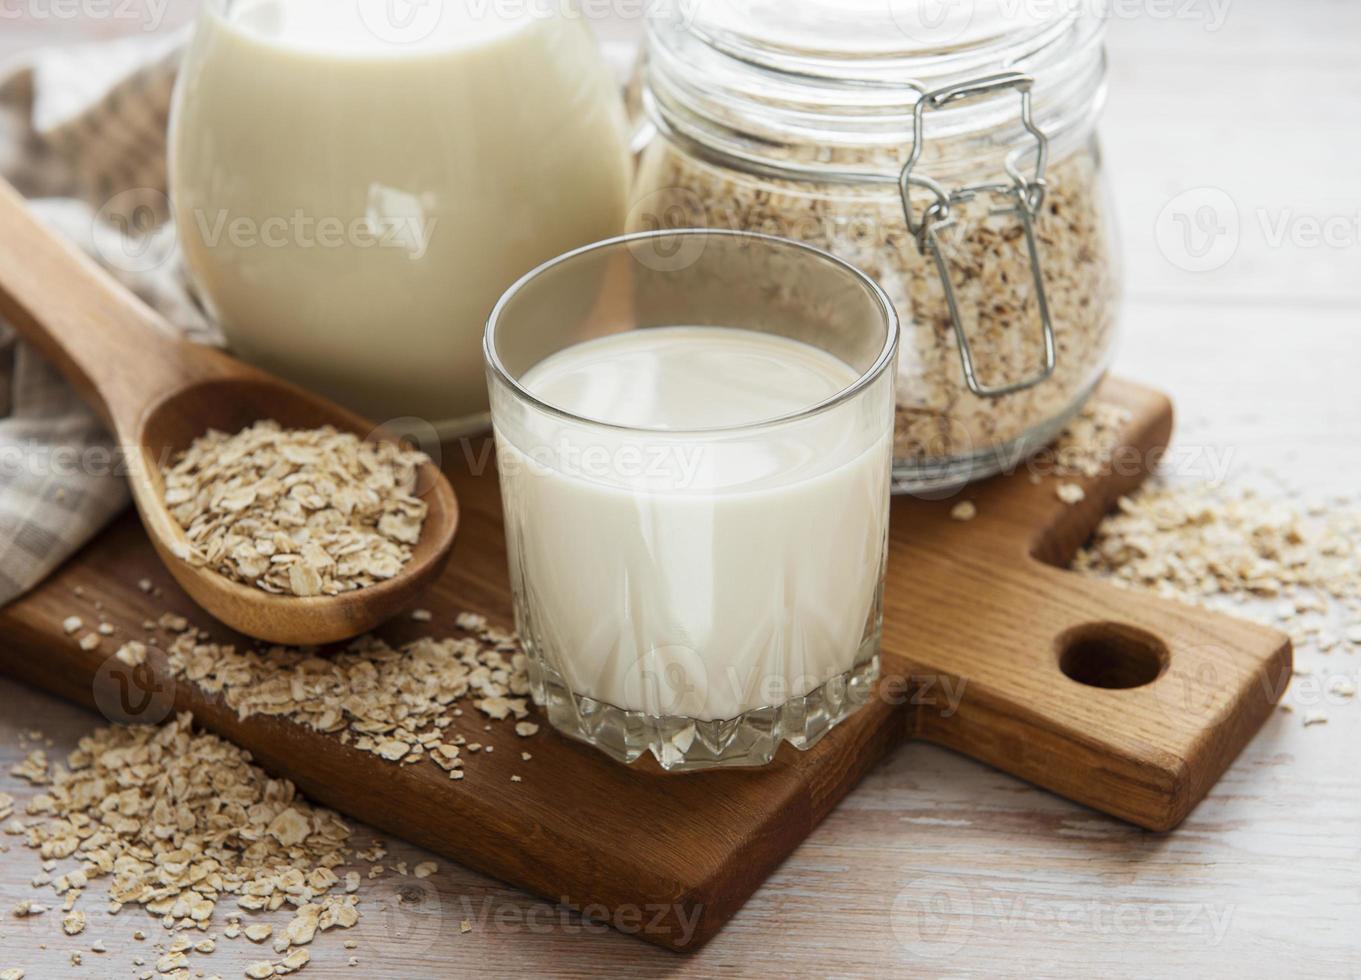 veganistische havermelk, niet-zuivel alternatieve melk foto